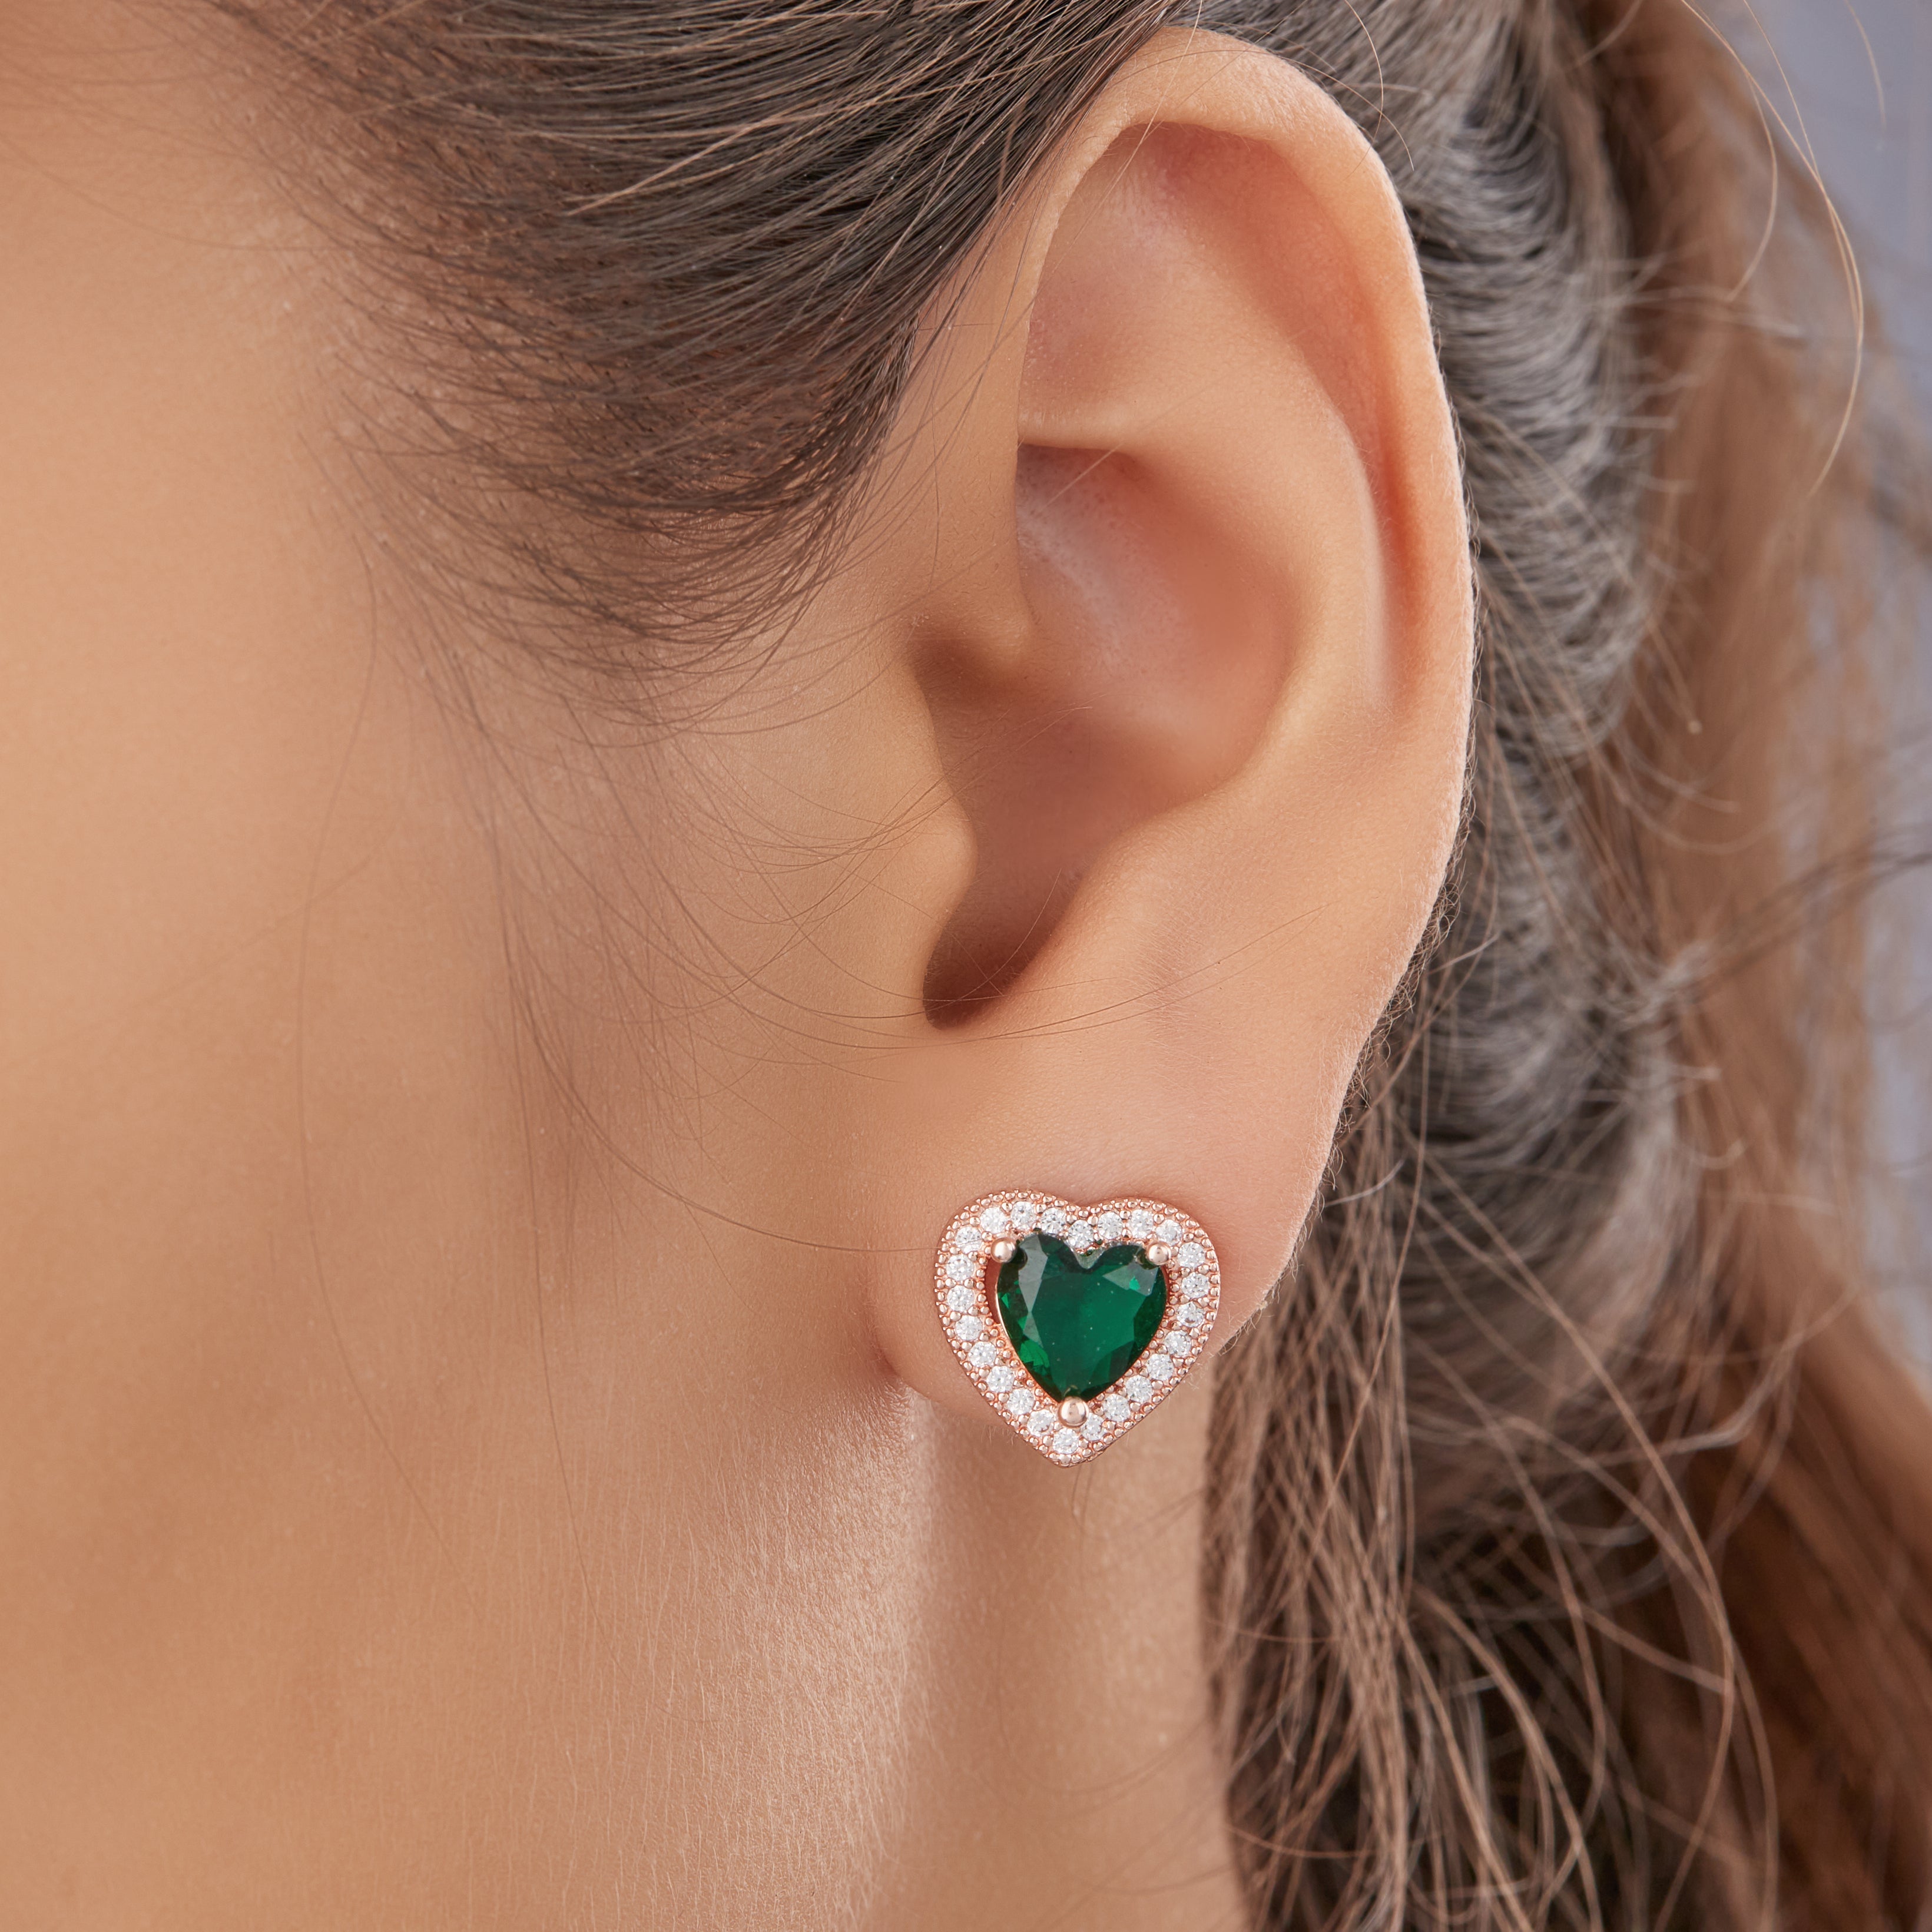 Buy LA SOULA Birthstone Brilliance 925 Emerald Radiance Heart Stud Earrings  online